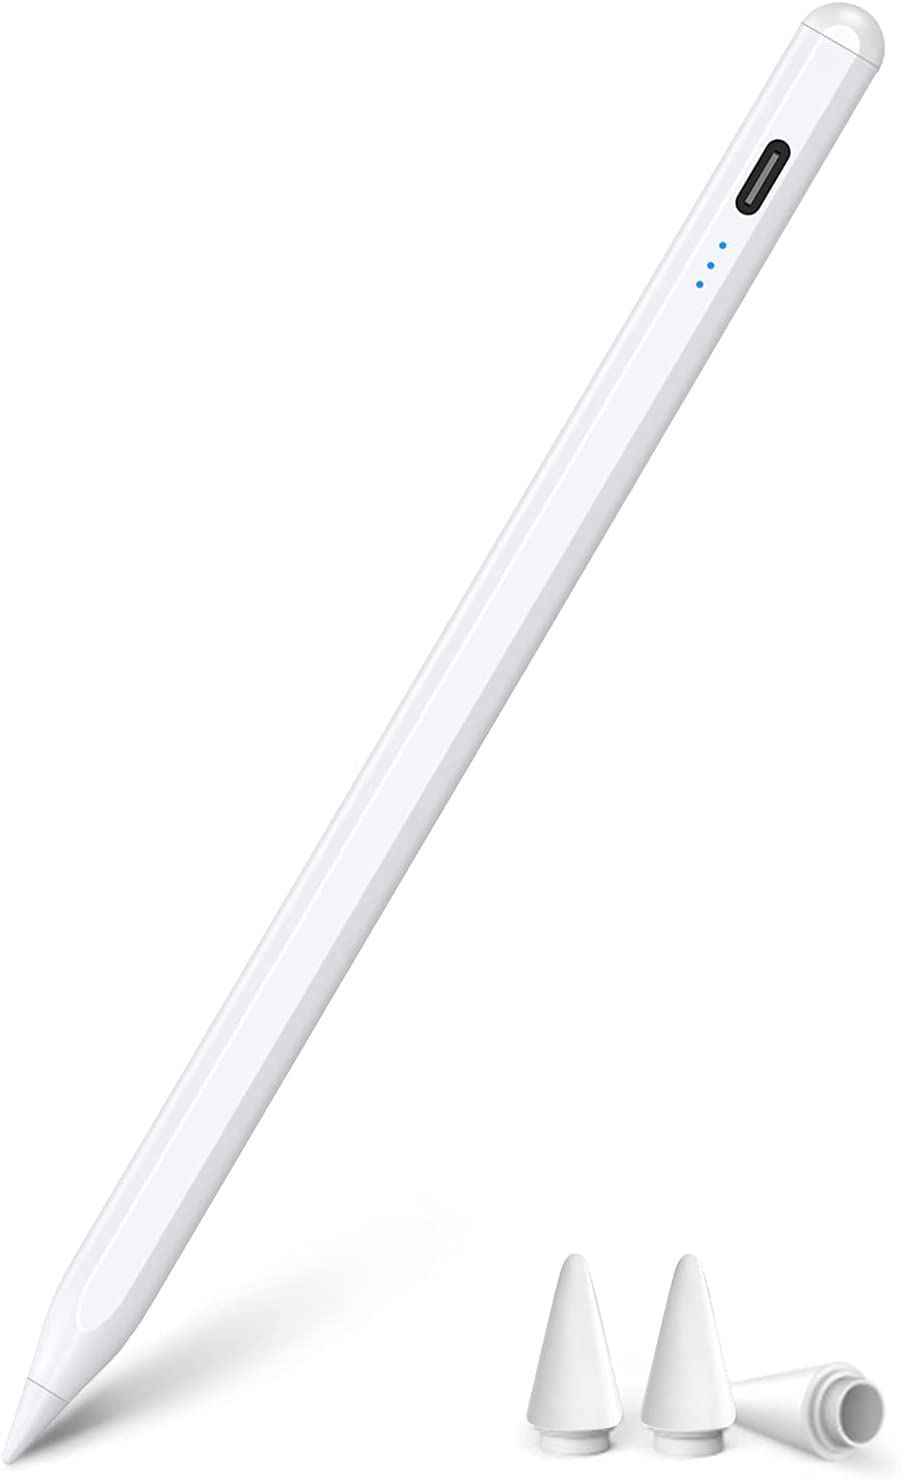 2022 タッチペン ipad ペンシル WINWILL極細 超高感度 電量表示 誤on/off防止 スタイラスペン 傾き感知/磁気吸着/誤作動防止機能対応  2018年以降iPad専用ペン